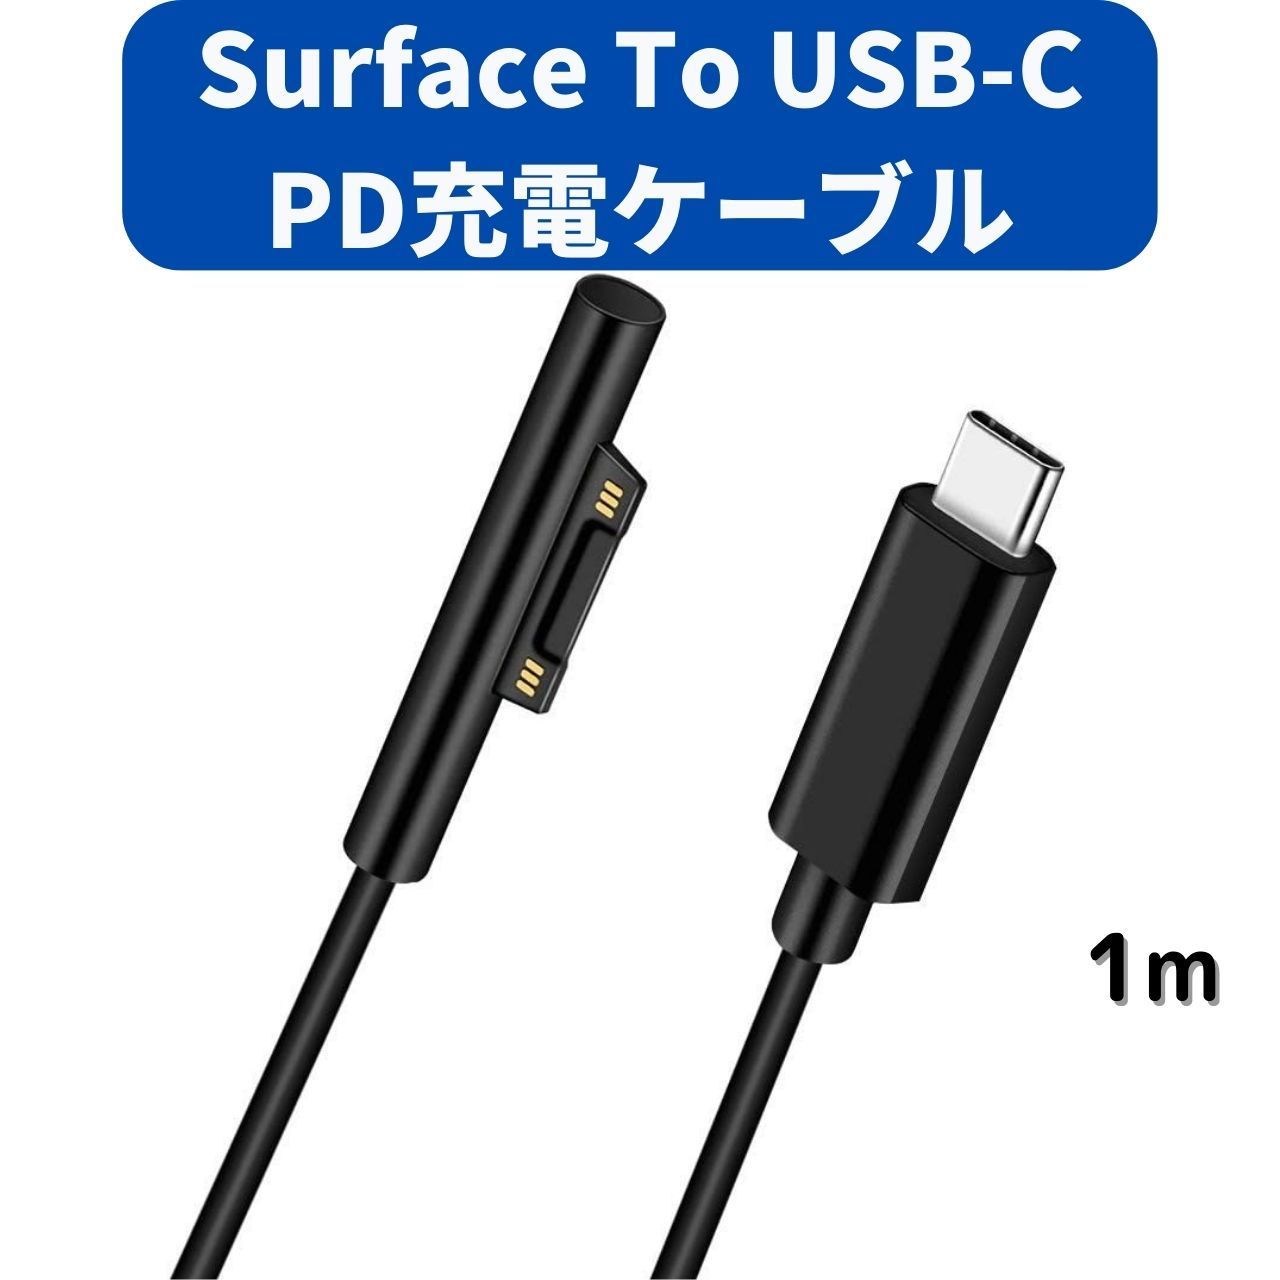 PD対応 USB type-cーtype-cケーブル 1m 黒 65%OFF【送料無料】 - PC